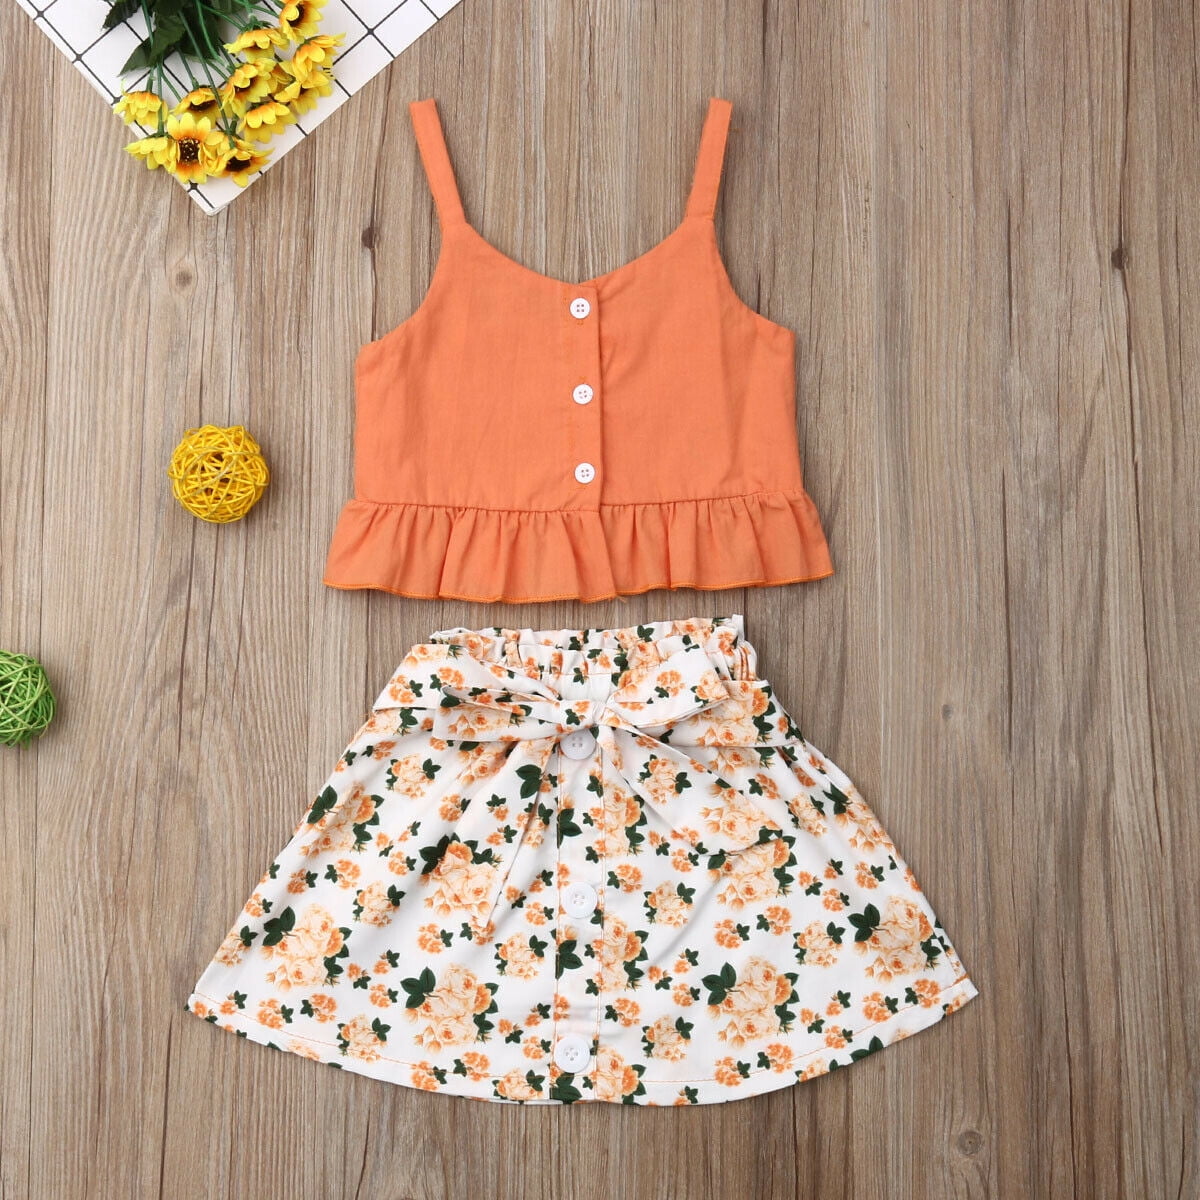 2PCS Toddler Kids Baby Girls Summer Outfits Clothes T-shirt Tops+Skirt Dress Set